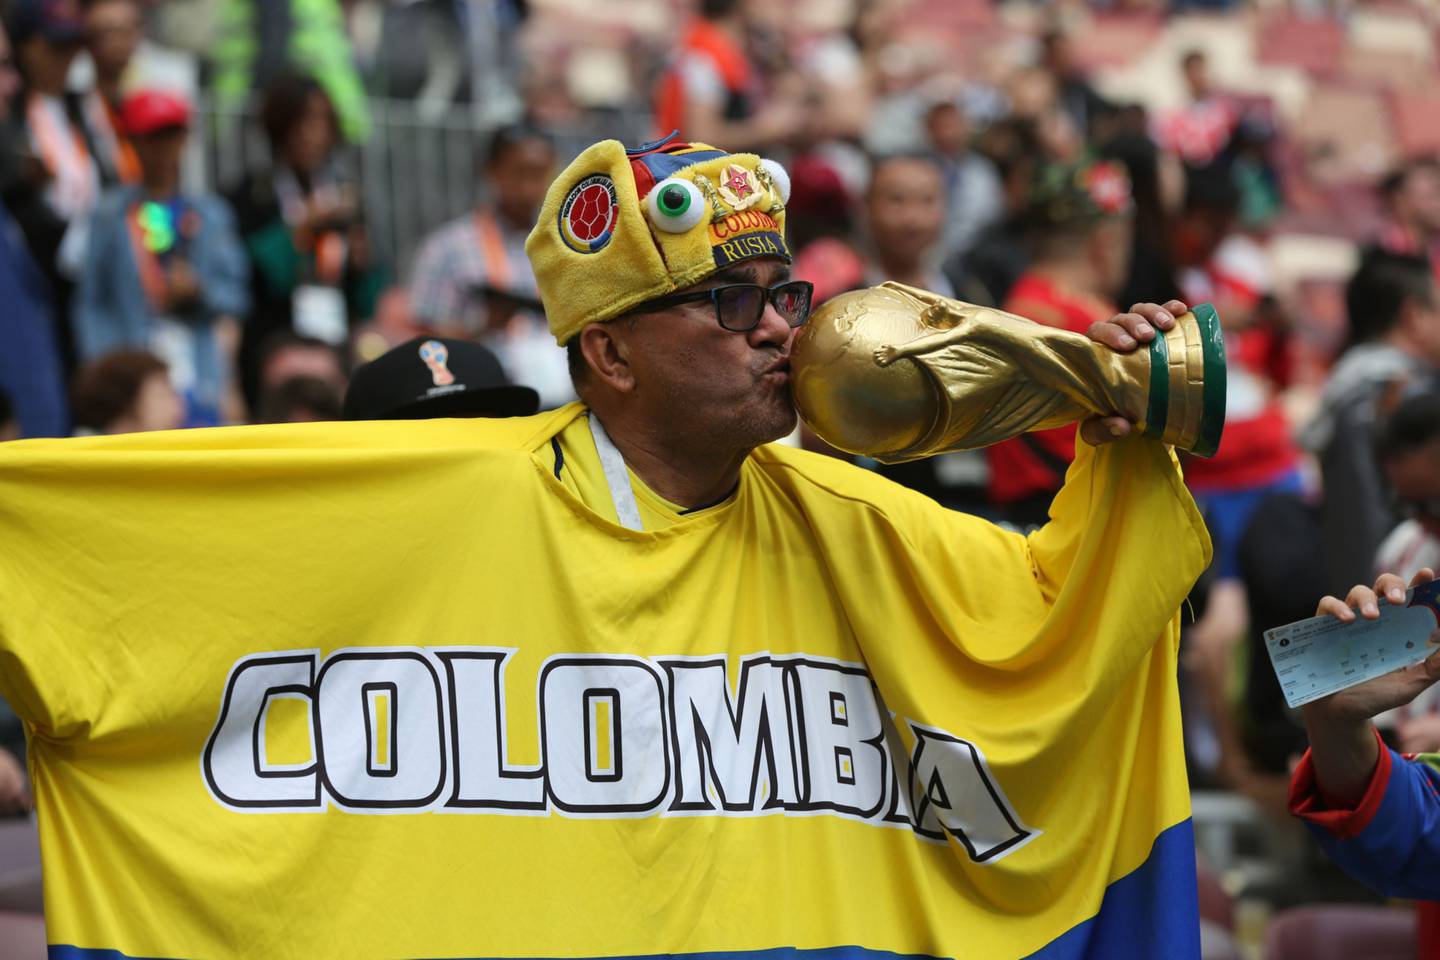 Un fanático del fútbol de Colombia besa una réplica del trofeo de la Copa Mundial durante la ceremonia de apertura de la Copa Mundial de la FIFA en el estadio Luzhniki en Moscú, Rusia, el jueves 14 de junio de 2018.dfd